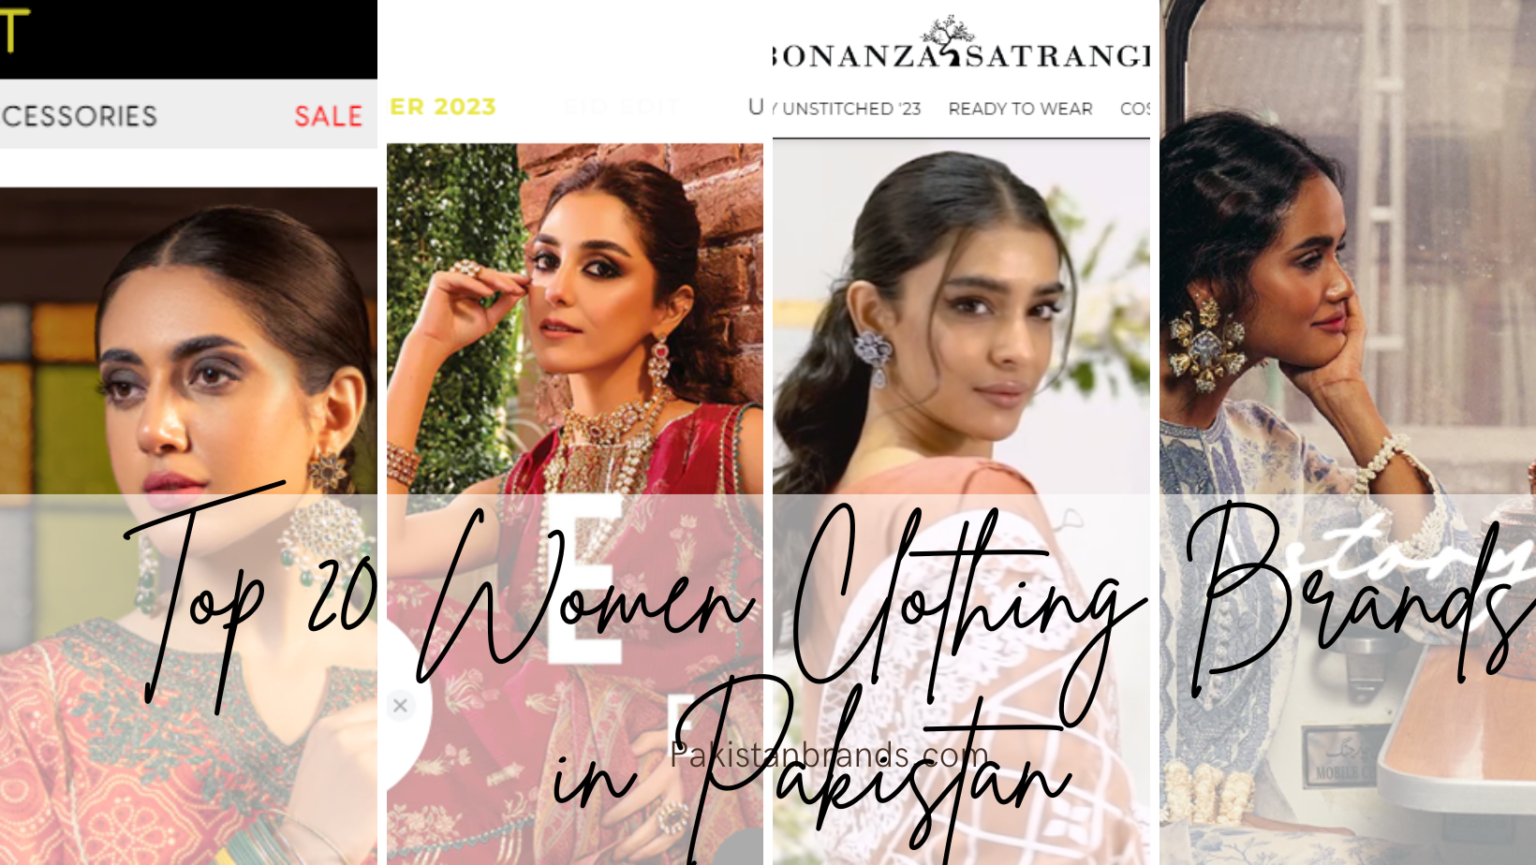 Top 20 Women Clothing Brands in Pakistan